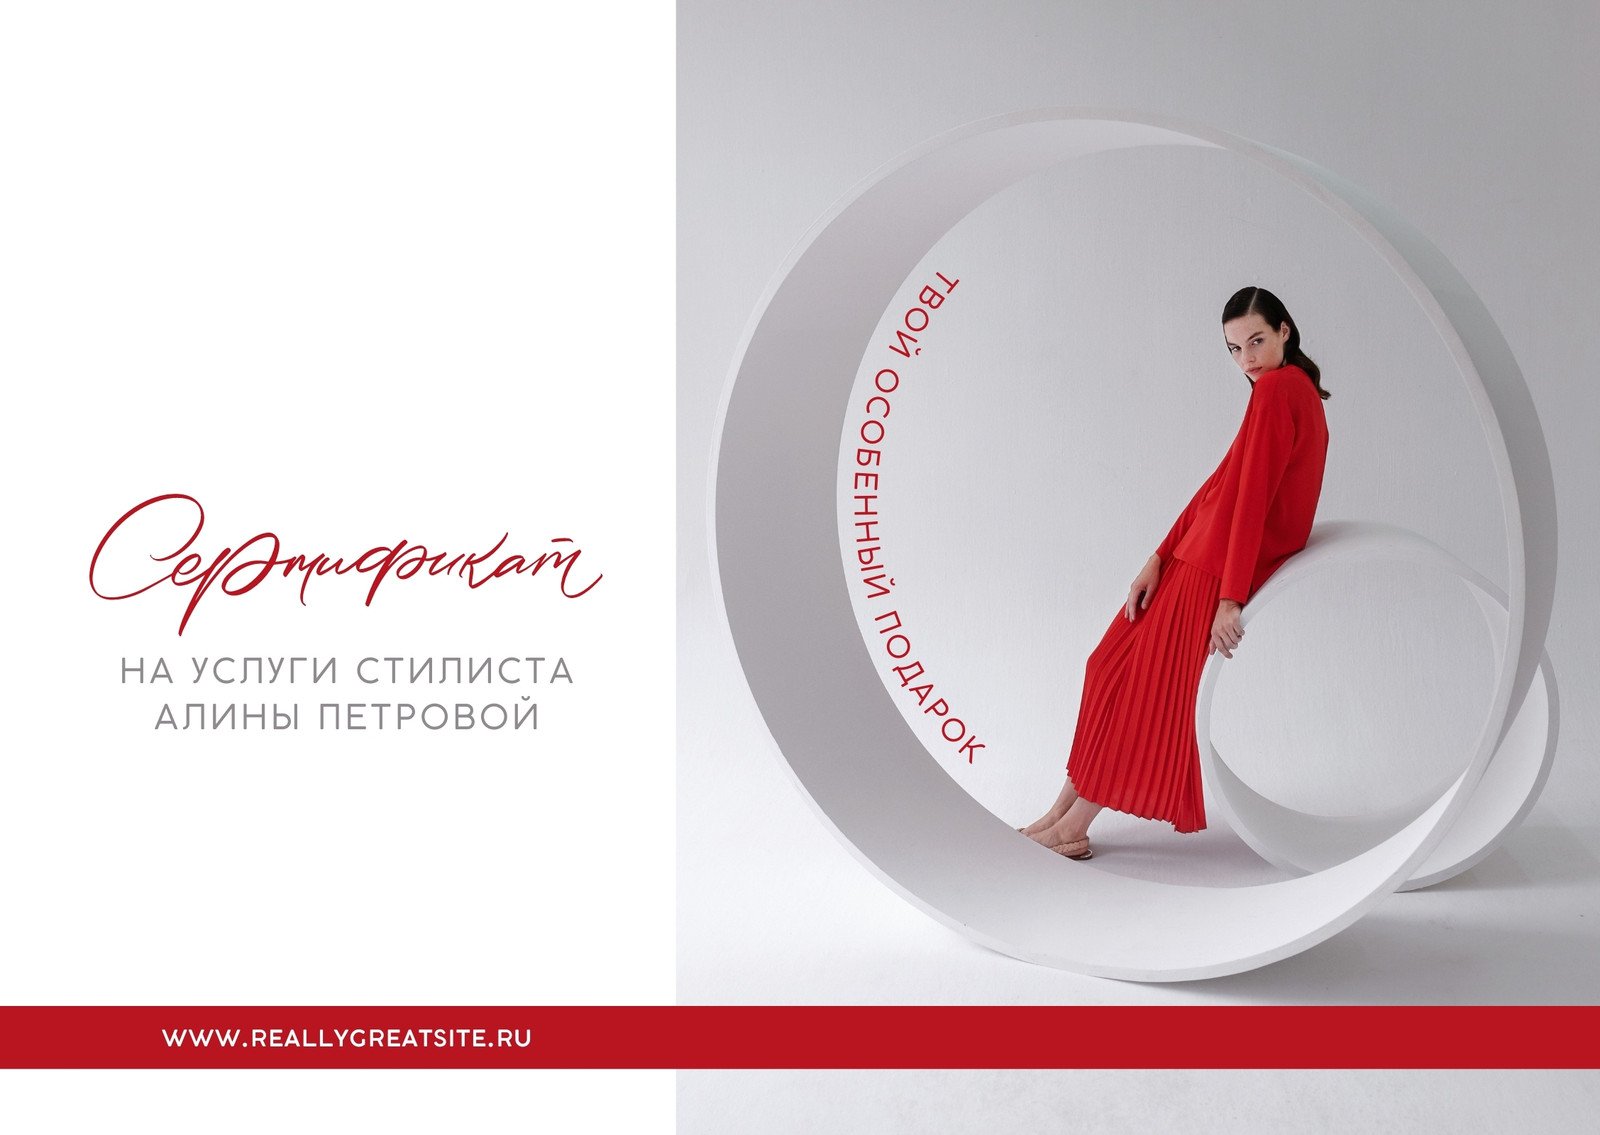 Купить Подарочные сертификаты премиум-класса - дизайнерский интернет-магазин Barcelona Design